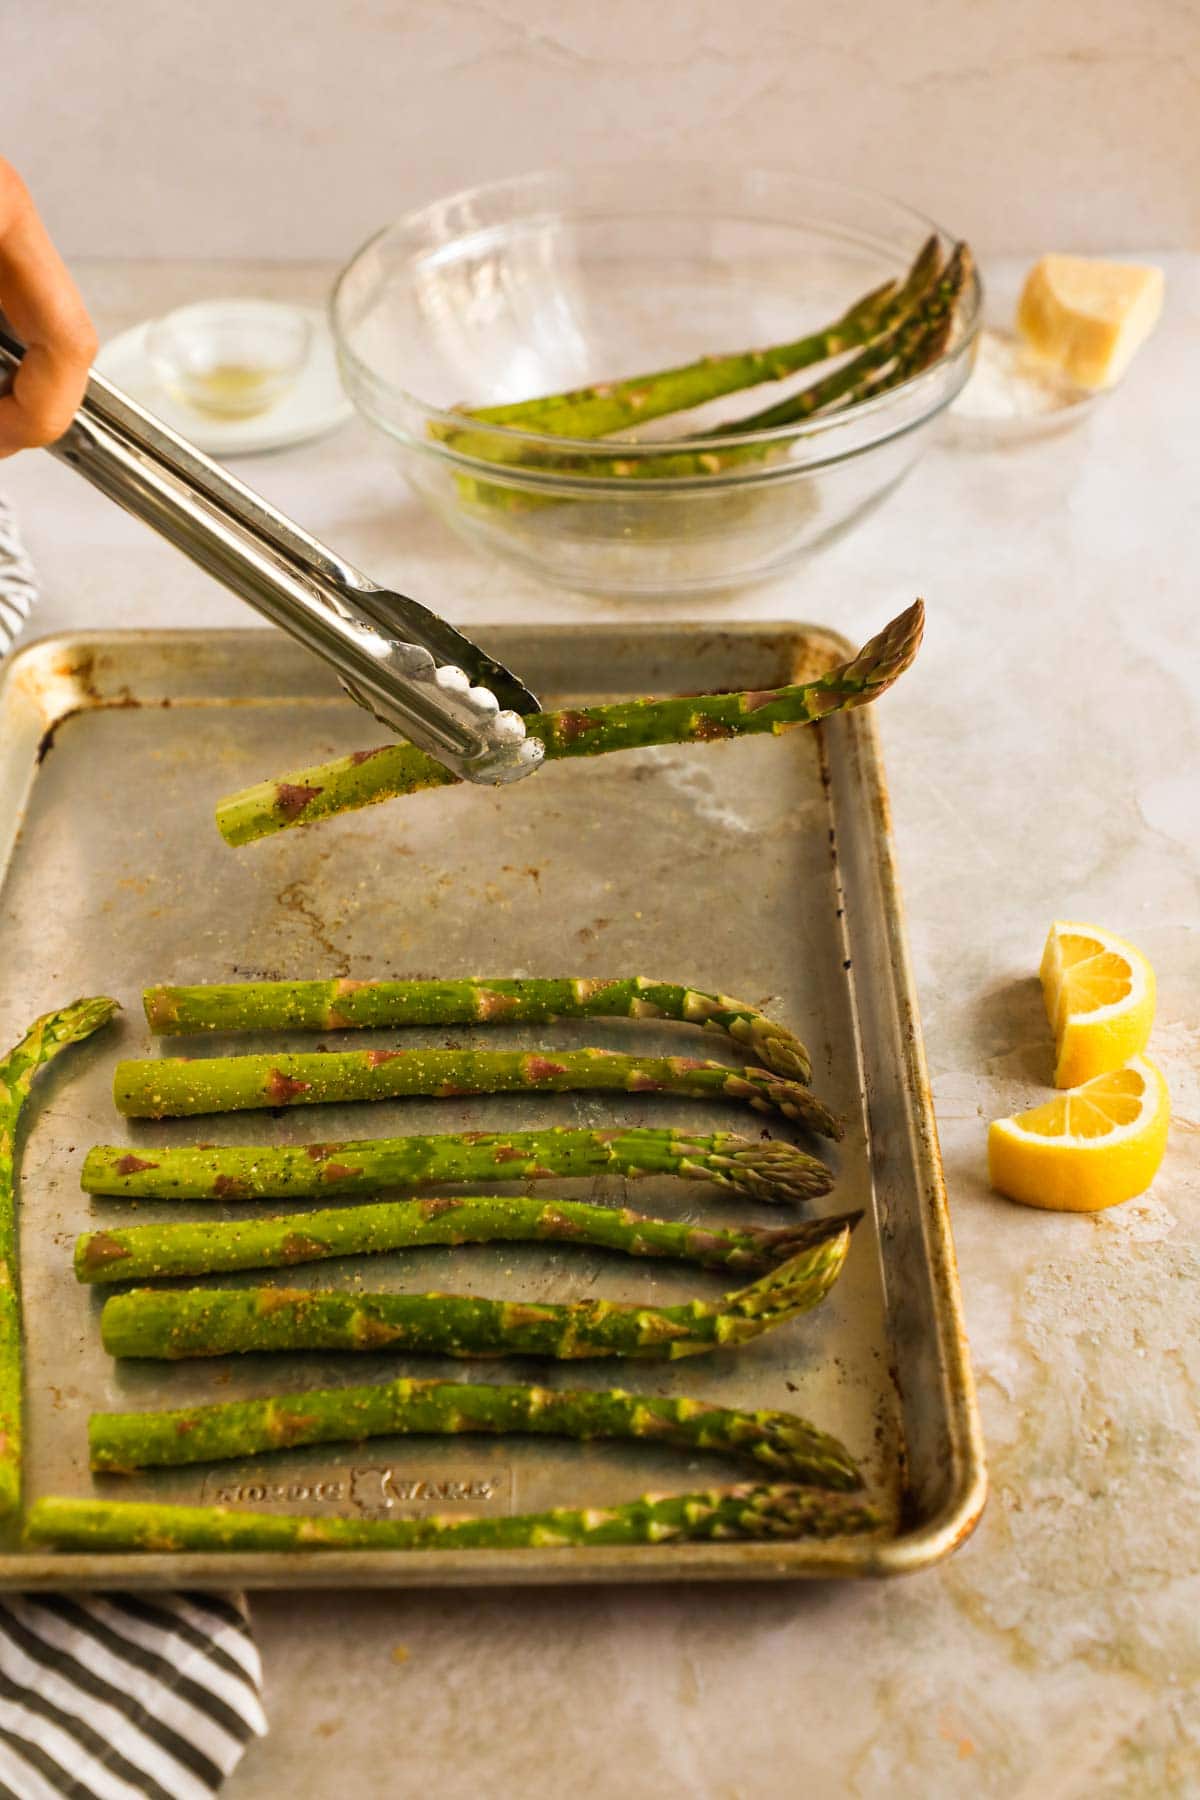 Tongs placing asparagus on Nordicware baking sheet pan.